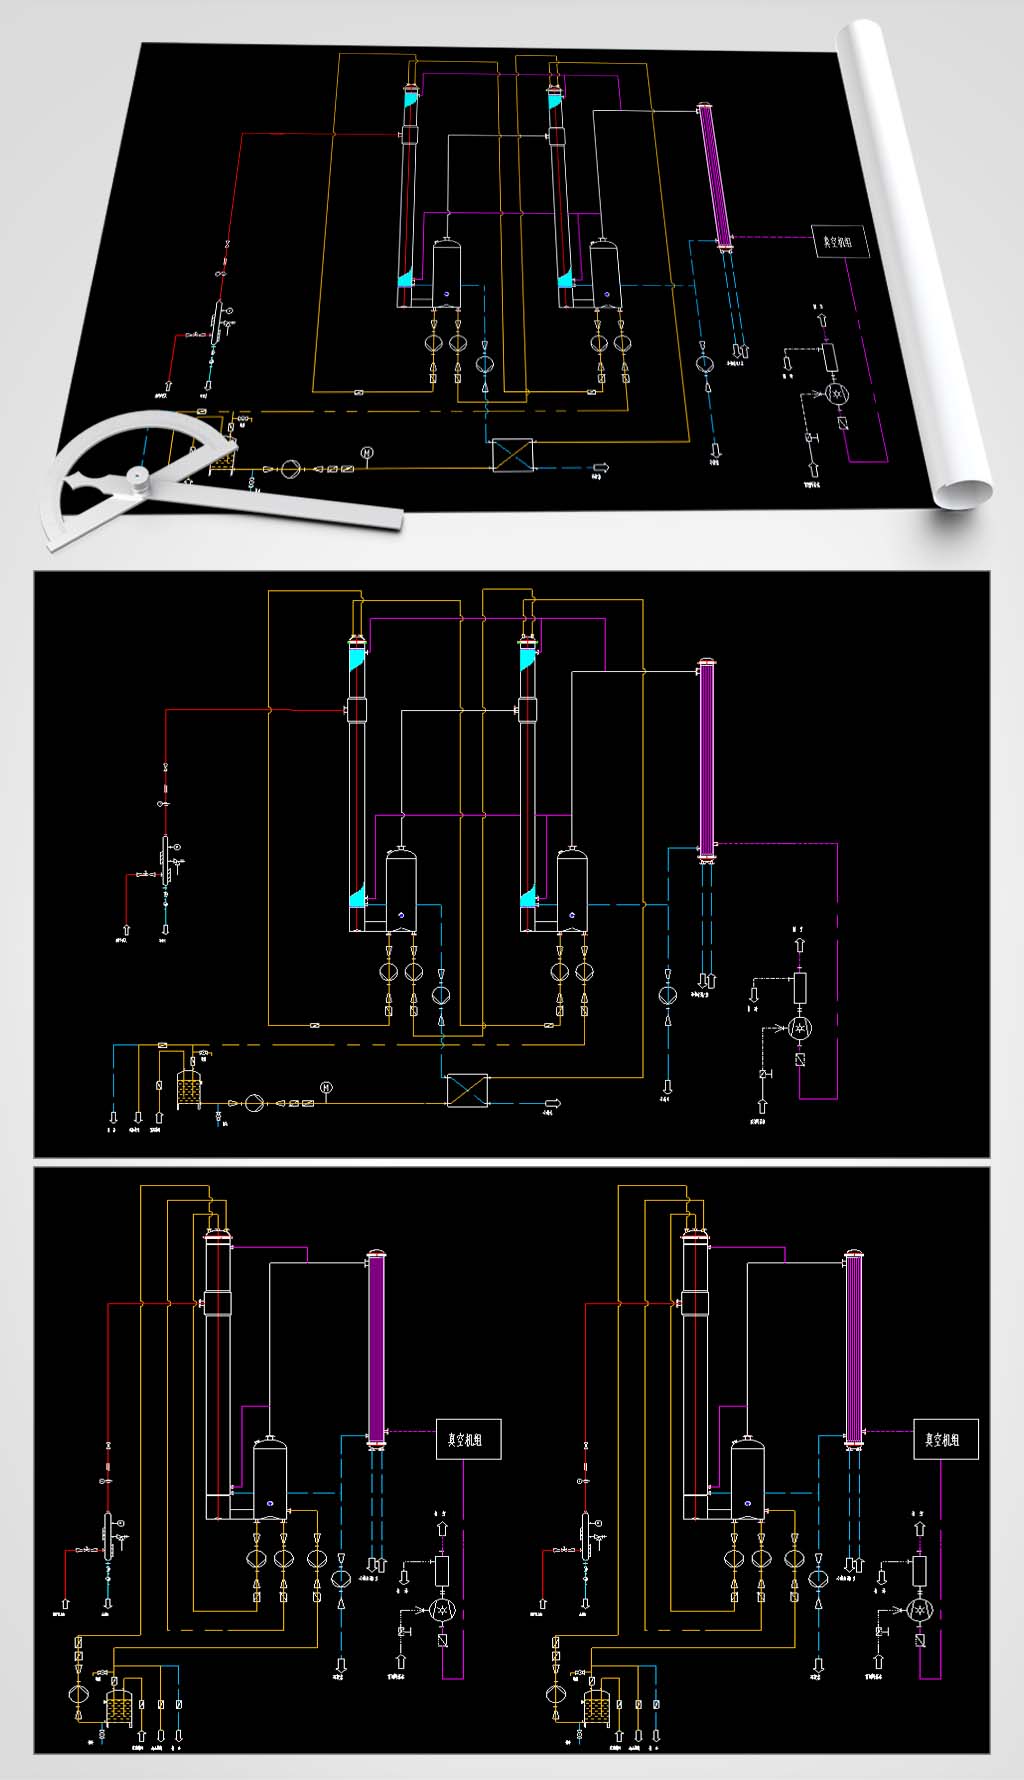 二效蒸发器工艺流程图图片